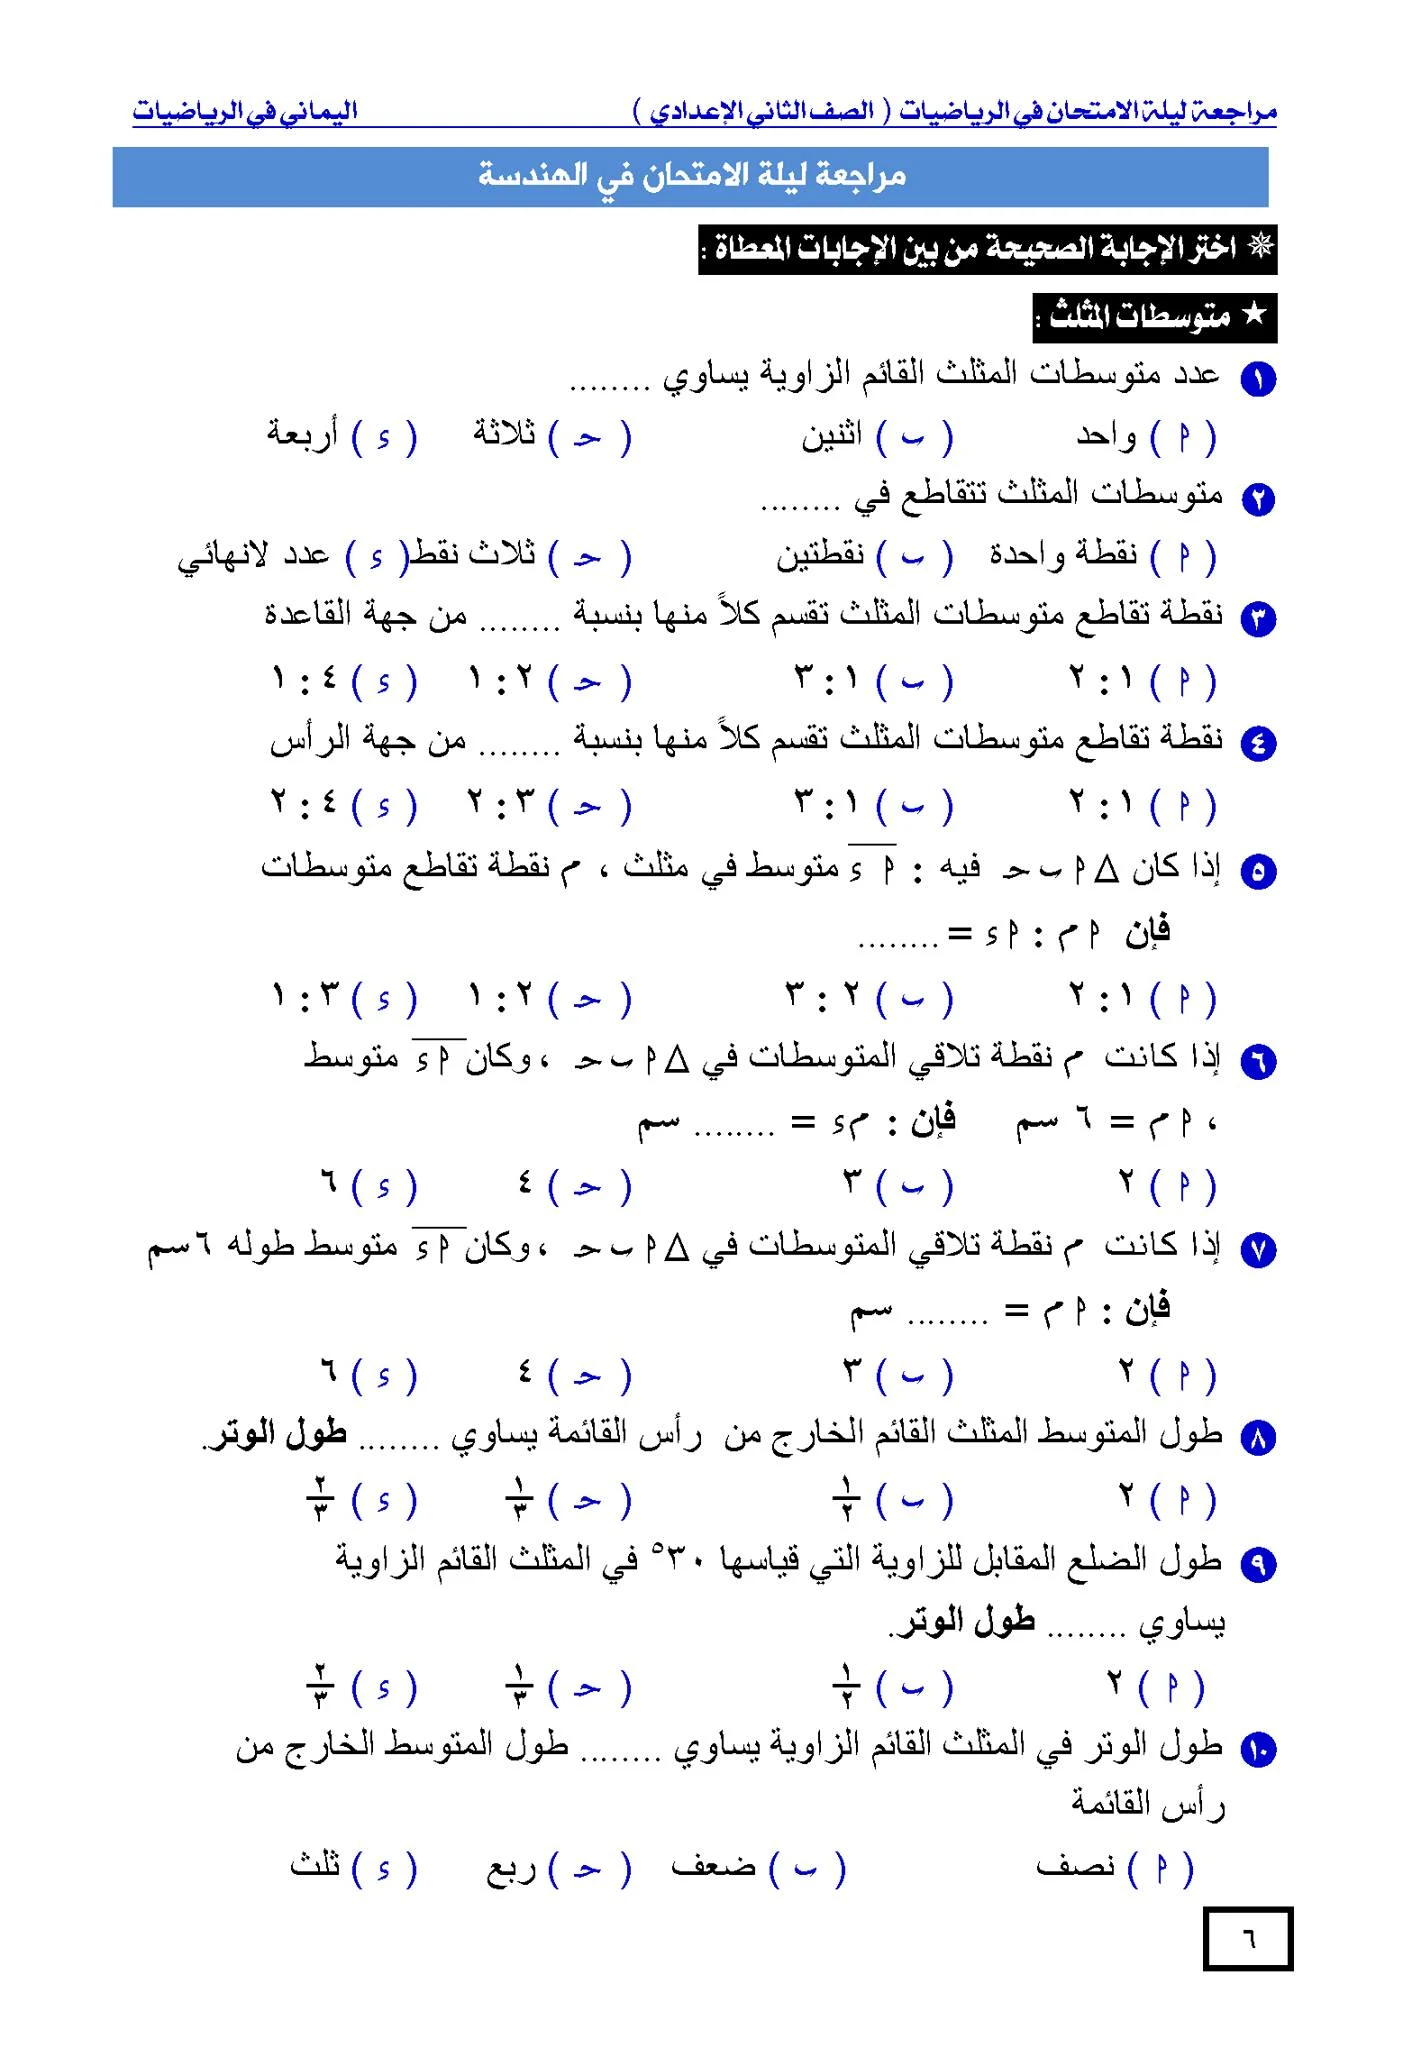 صور من مراجعة ليلة الامتحان في الرياضيات للصف الثاني الإعدادي 2020 - 2021 حسب الإمتحان المجمع